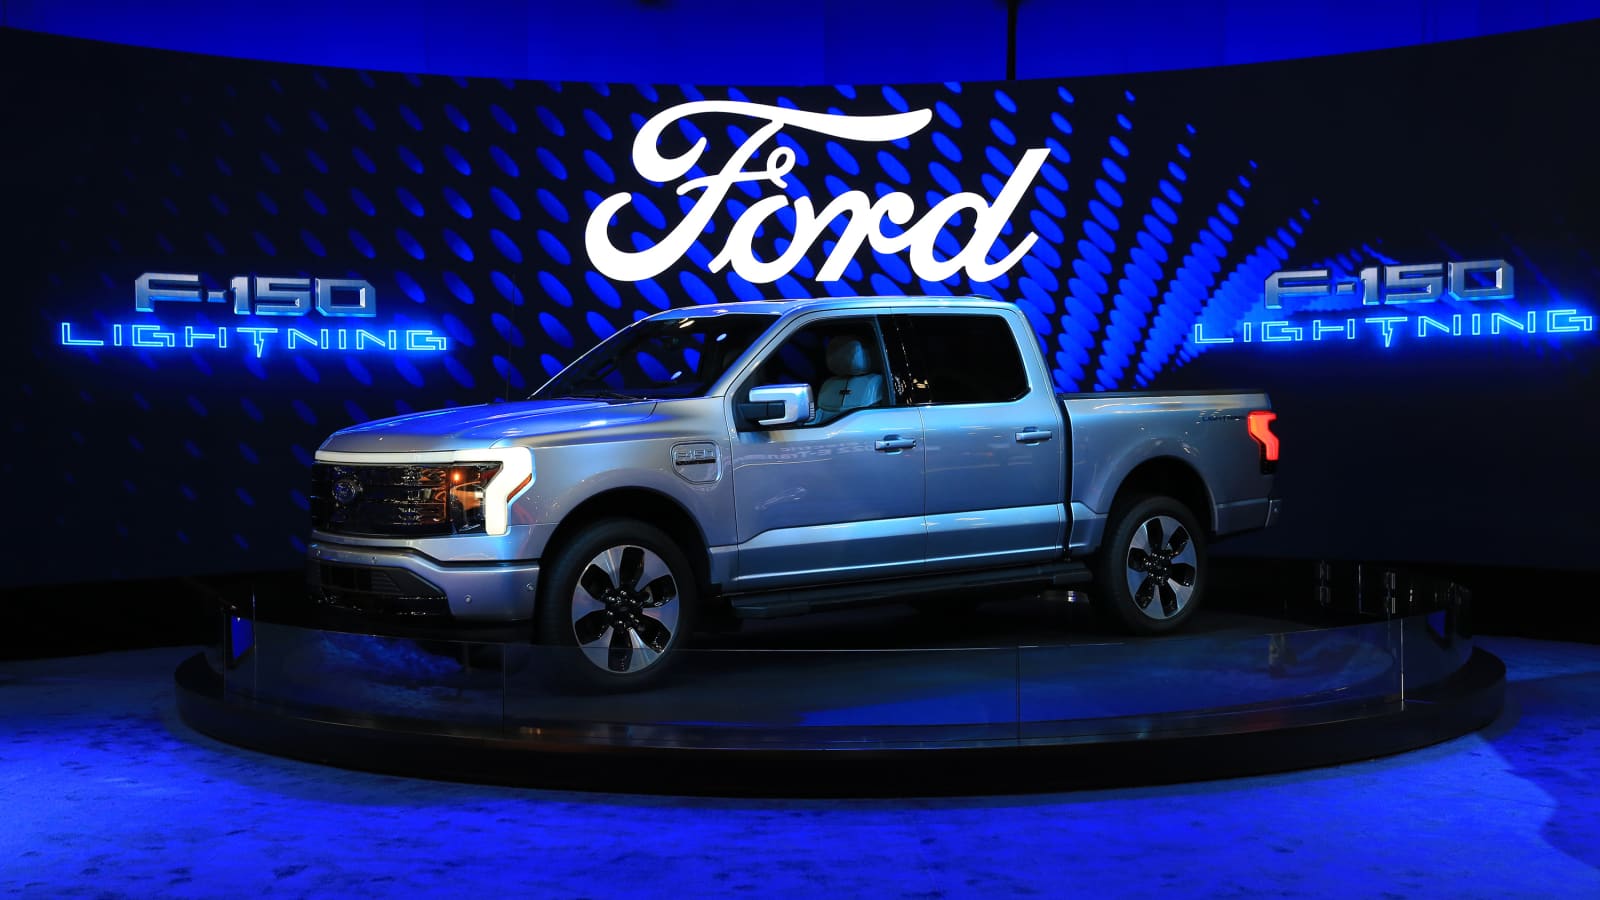 Nonostante le sfide, il pick-up Ford elettrico continua a guadagnare consensi